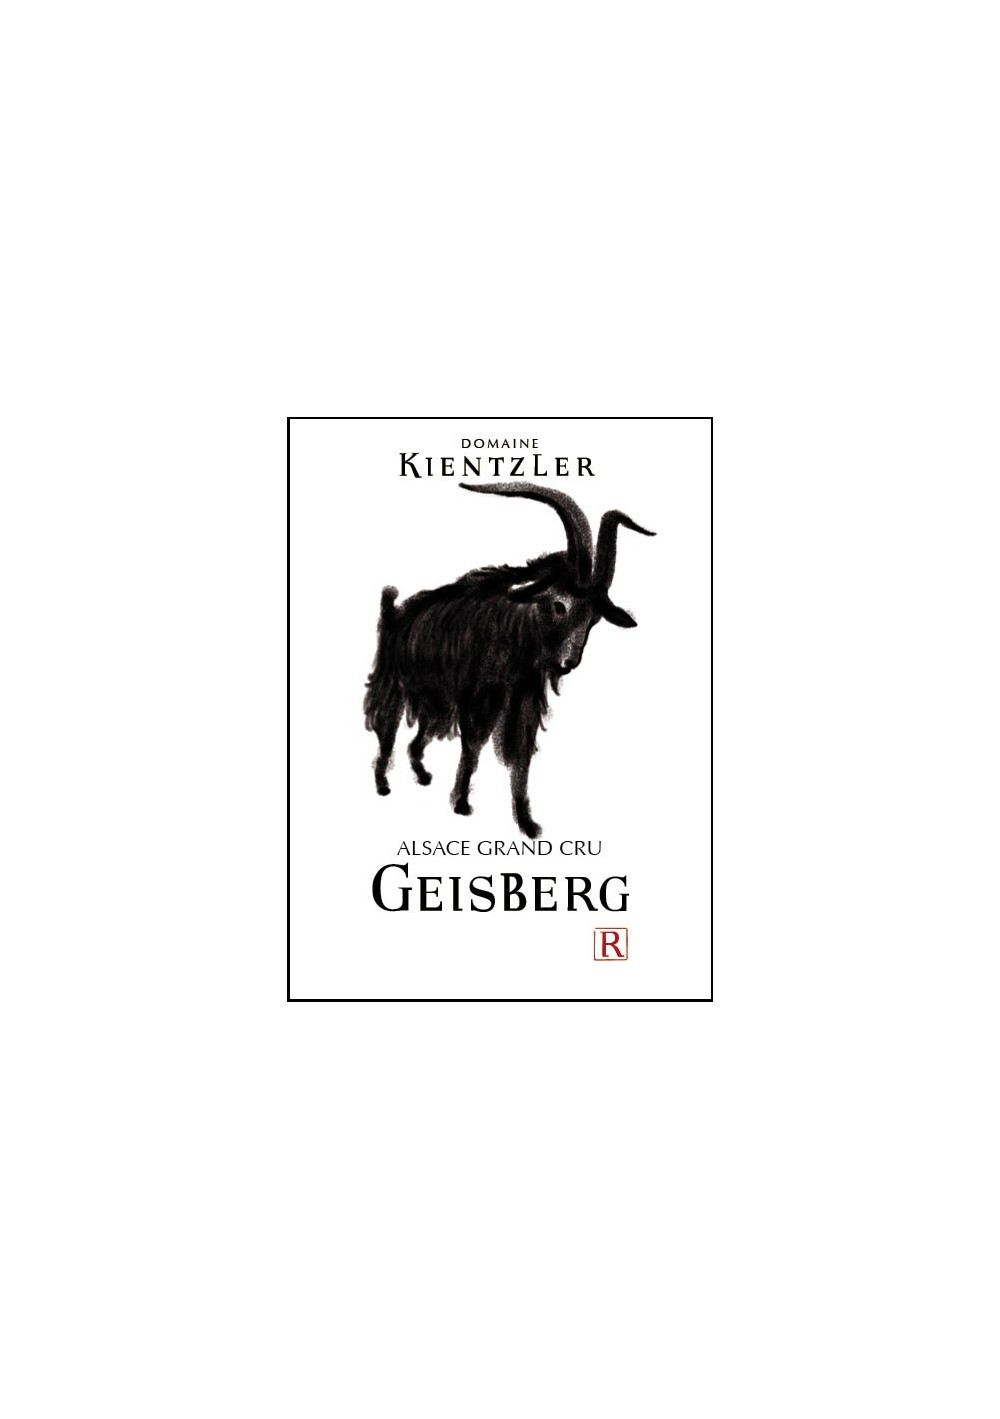 RIESLING GRAND CRU GEISBERG 2018 - 2